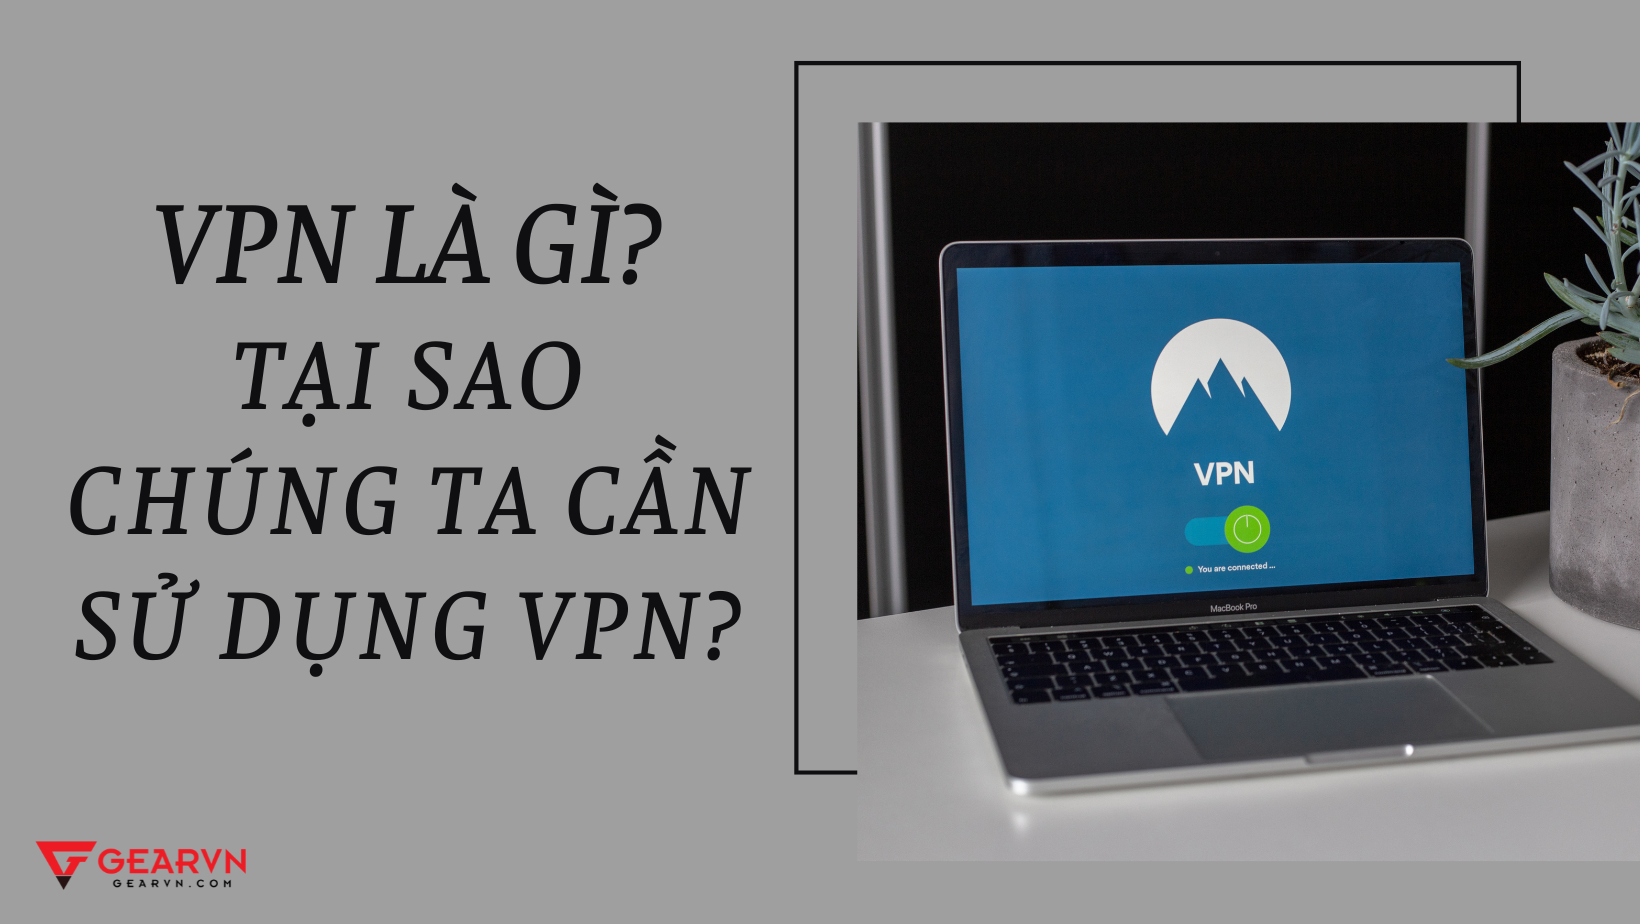 VPN là gì? Tại sao chúng ta cần sử dụng VPN?